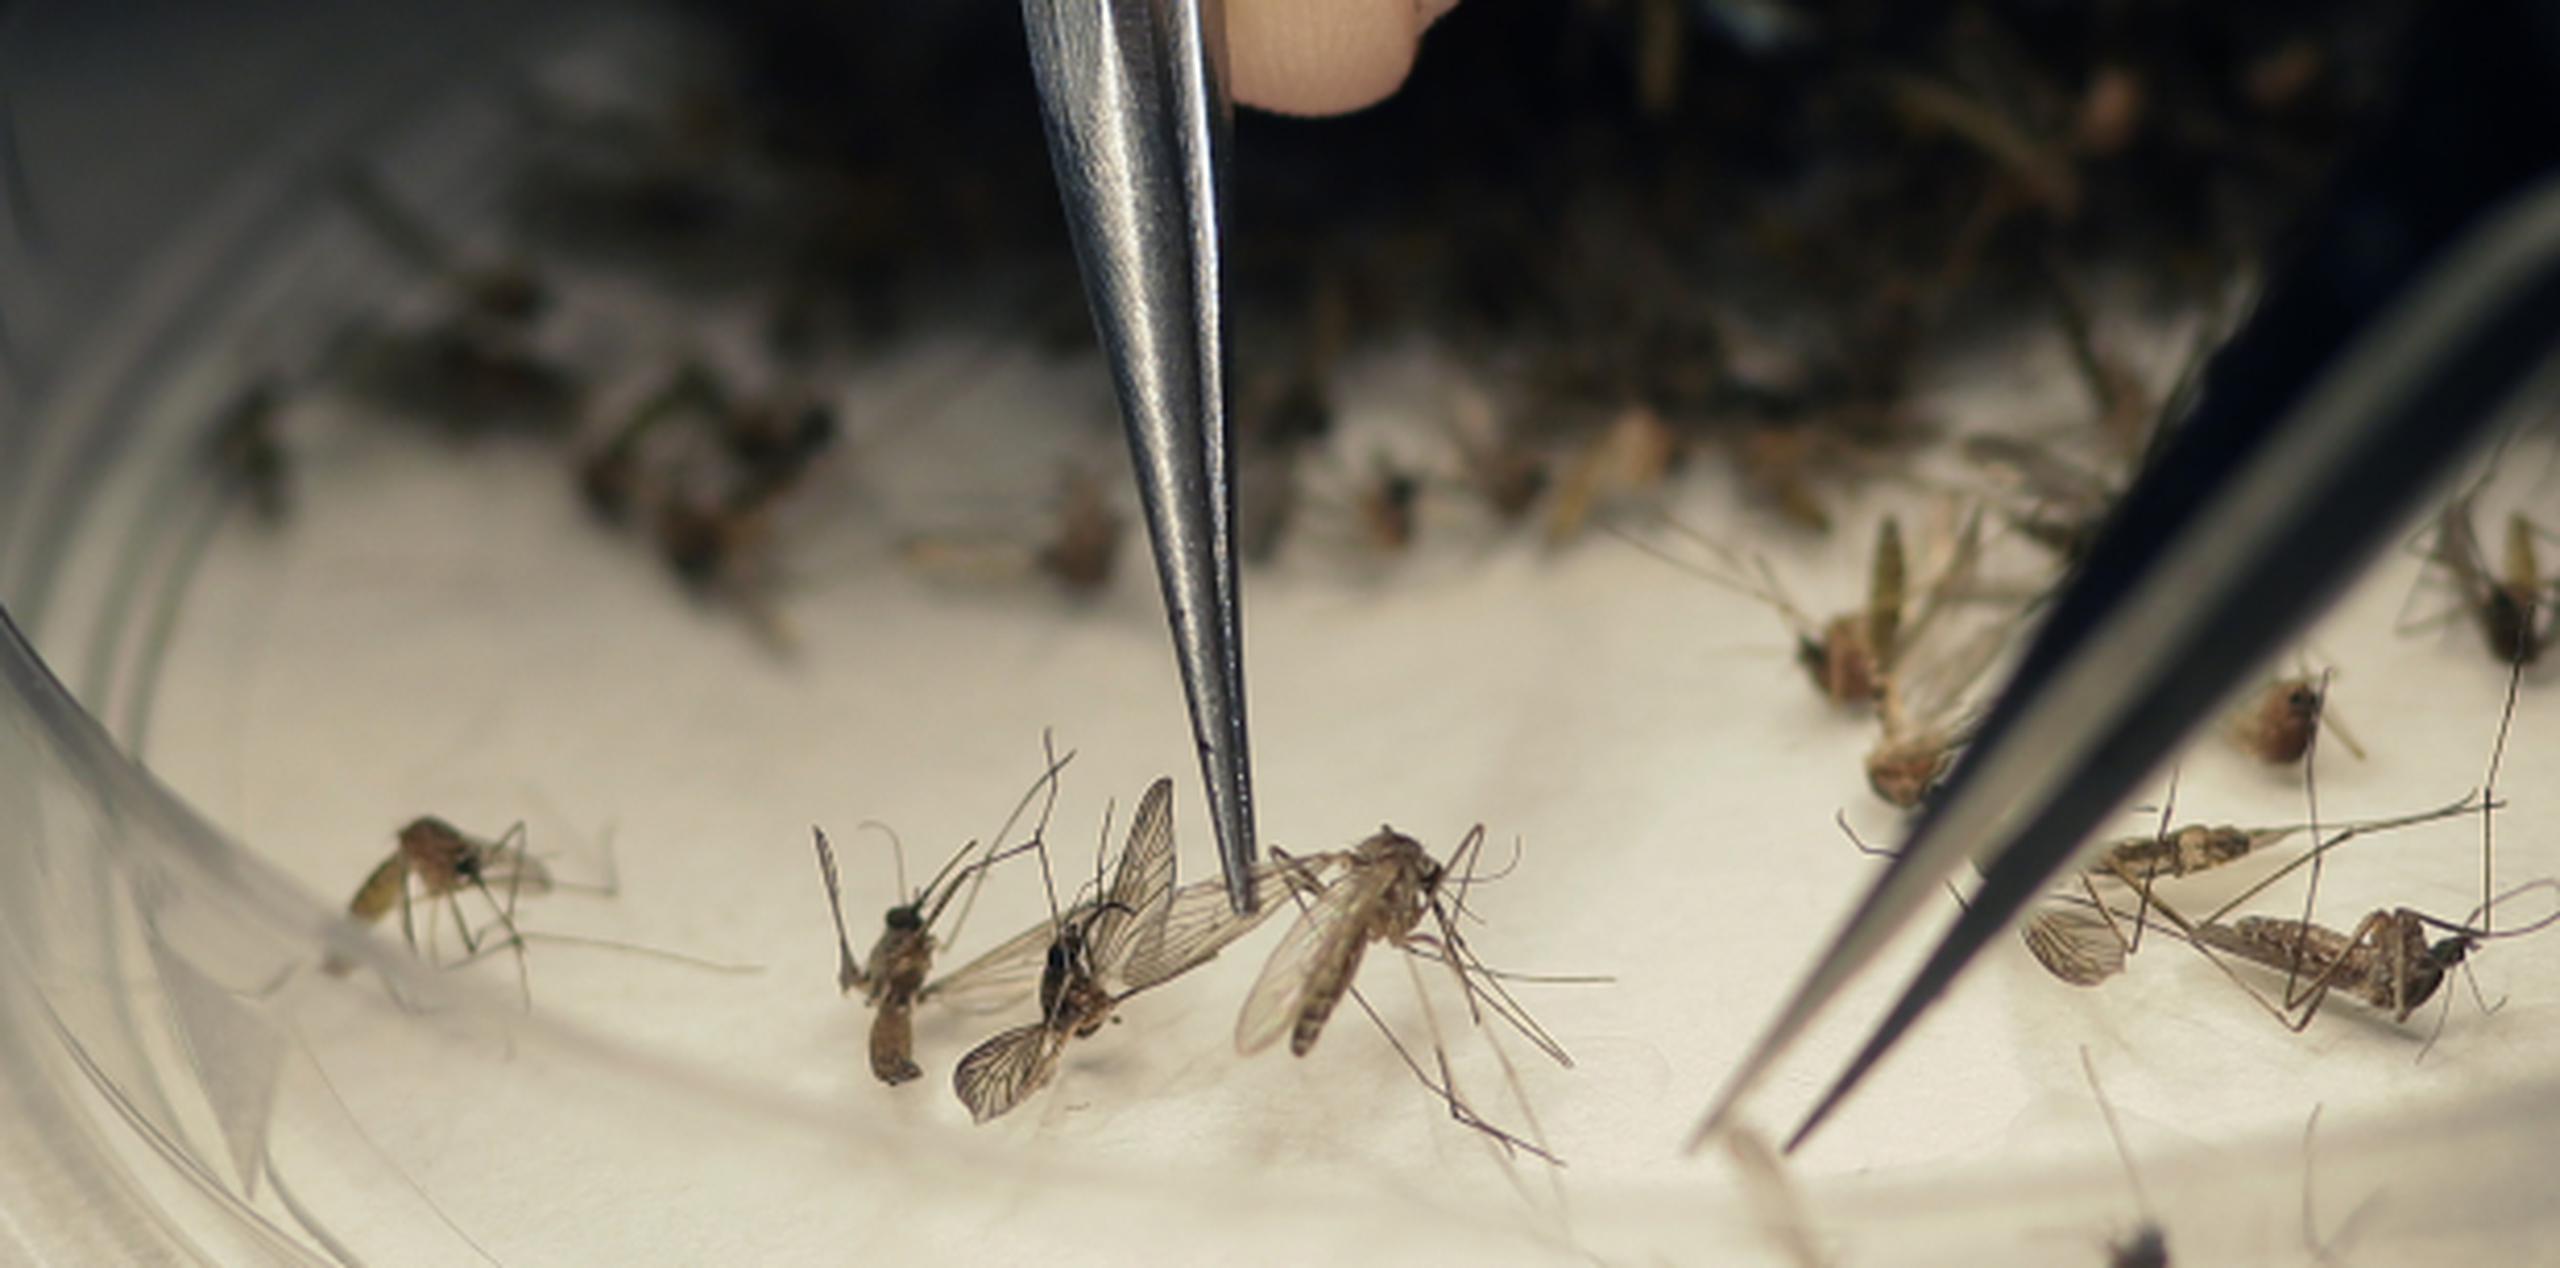 Puerto Rico ha padecido en la última década epidemias de dengue, chikungunya y zika, todas transmitidas por mosquitos. (Archivo)